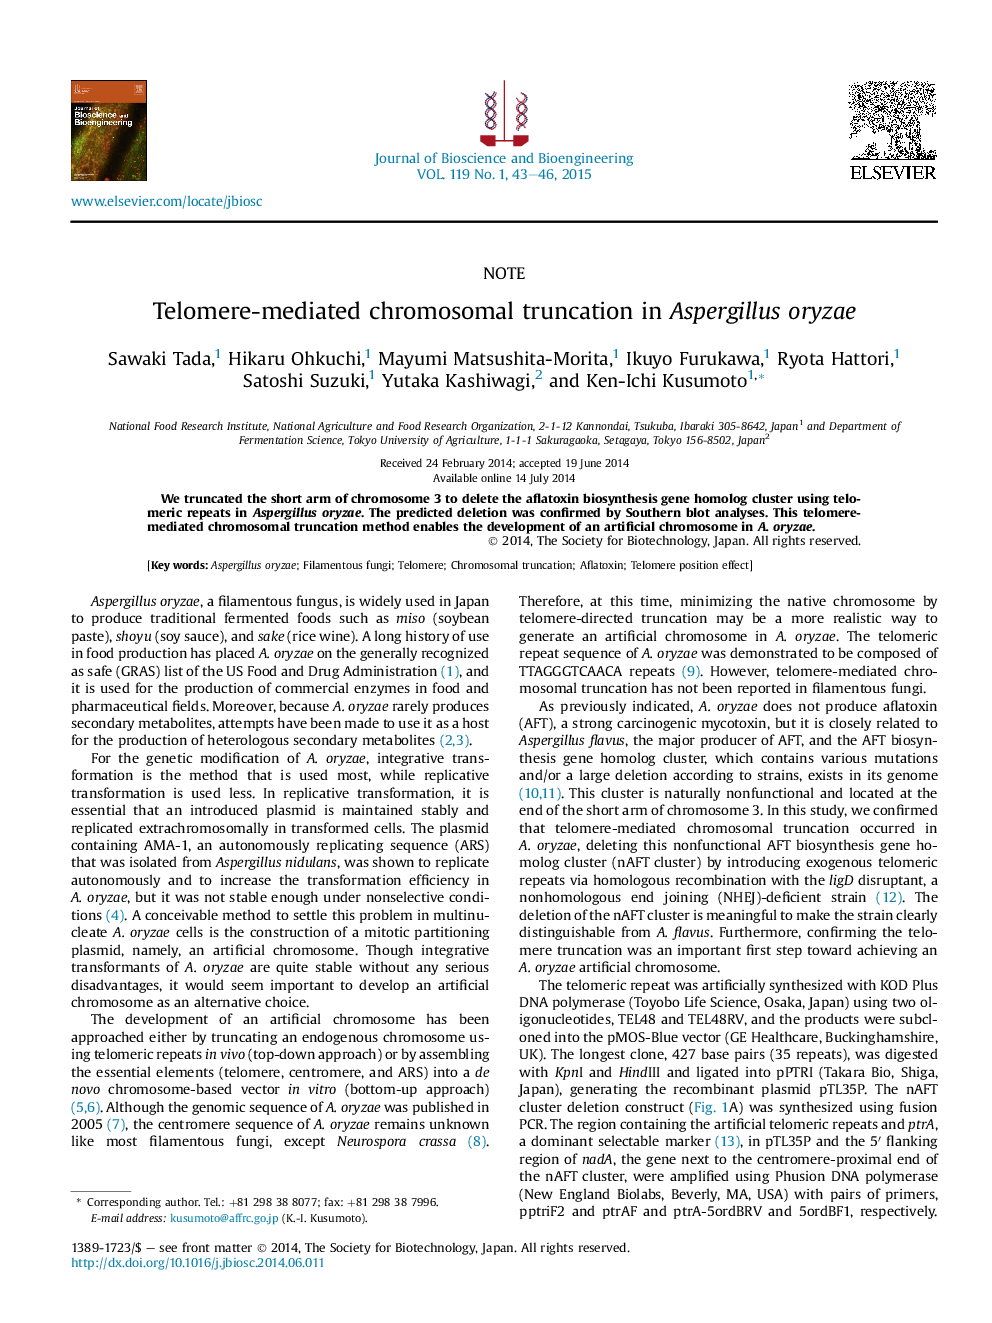 Telomere-mediated chromosomal truncation in Aspergillus oryzae